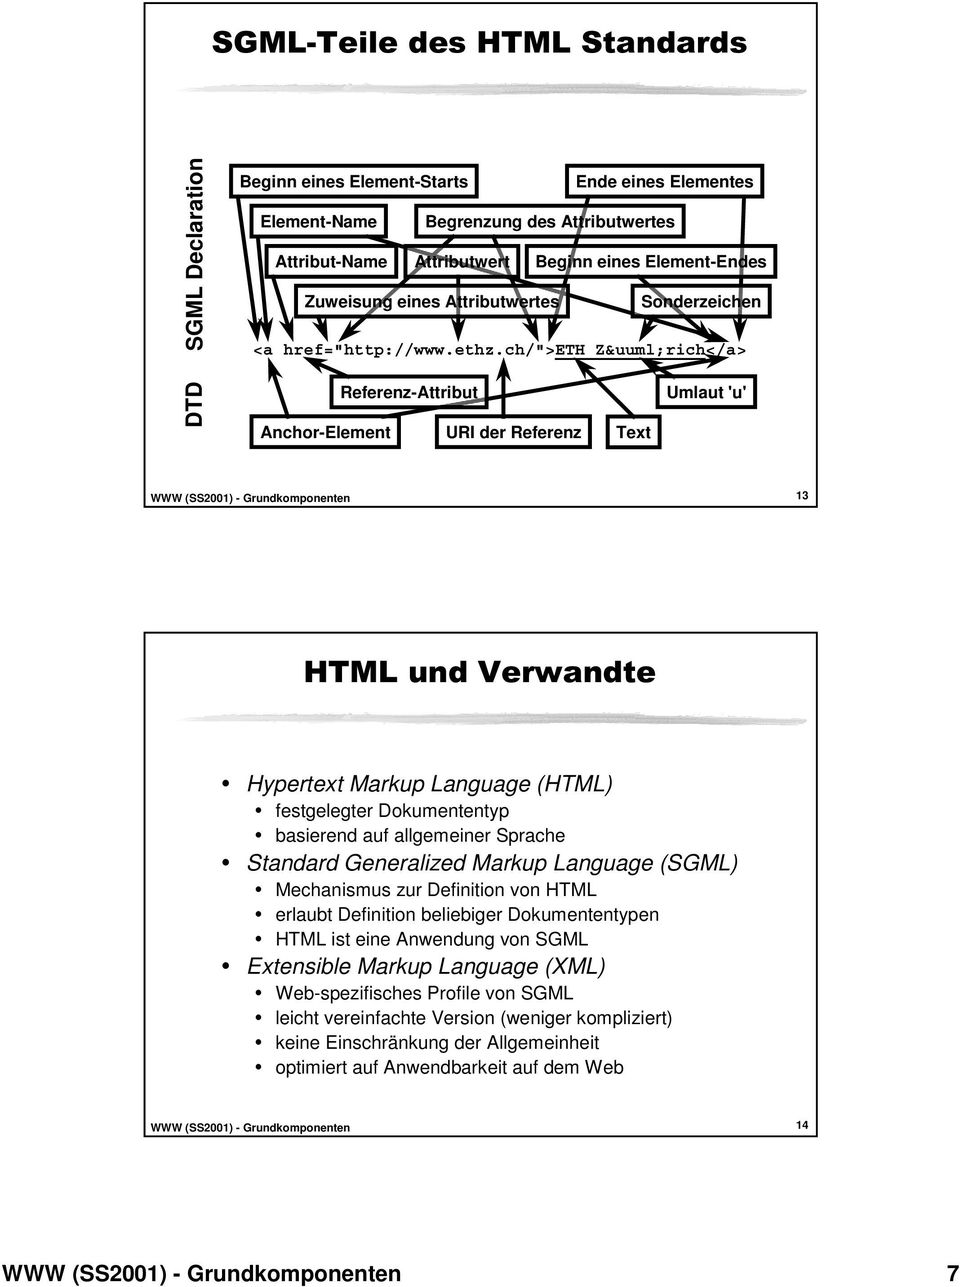 ch/">eth Zürich</a> DTD Anchor-Element Referenz-Attribut URI der Referenz Text Umlaut 'u' 13 HTML und Verwandte Hypertext Markup Language (HTML) festgelegter entyp basierend auf allgemeiner Sprache